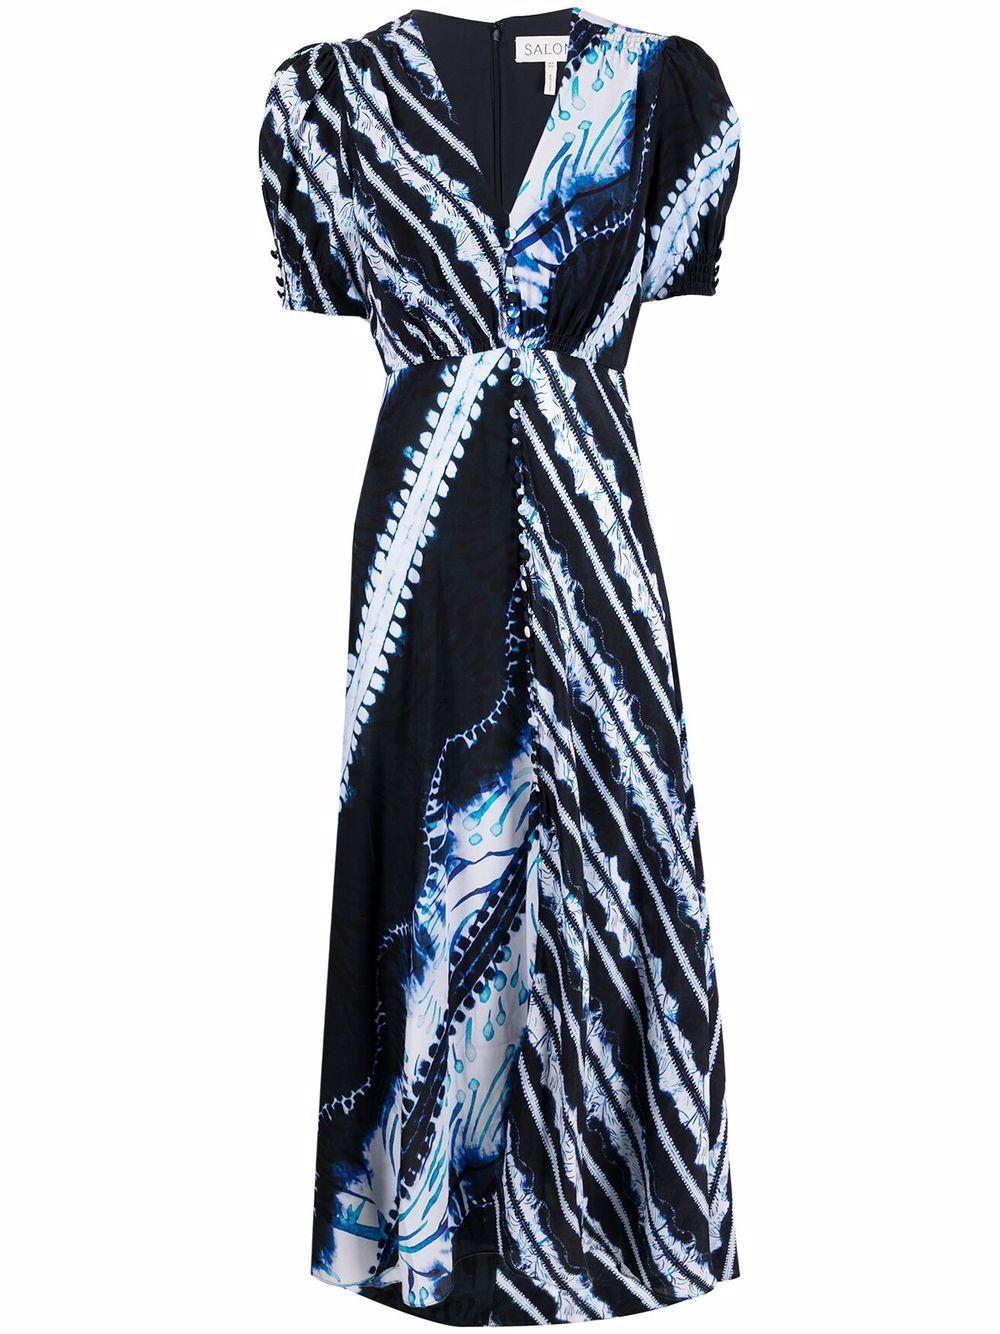 Saloni Tie-dye Print Maxi Dress in Black - Save 62% - Lyst